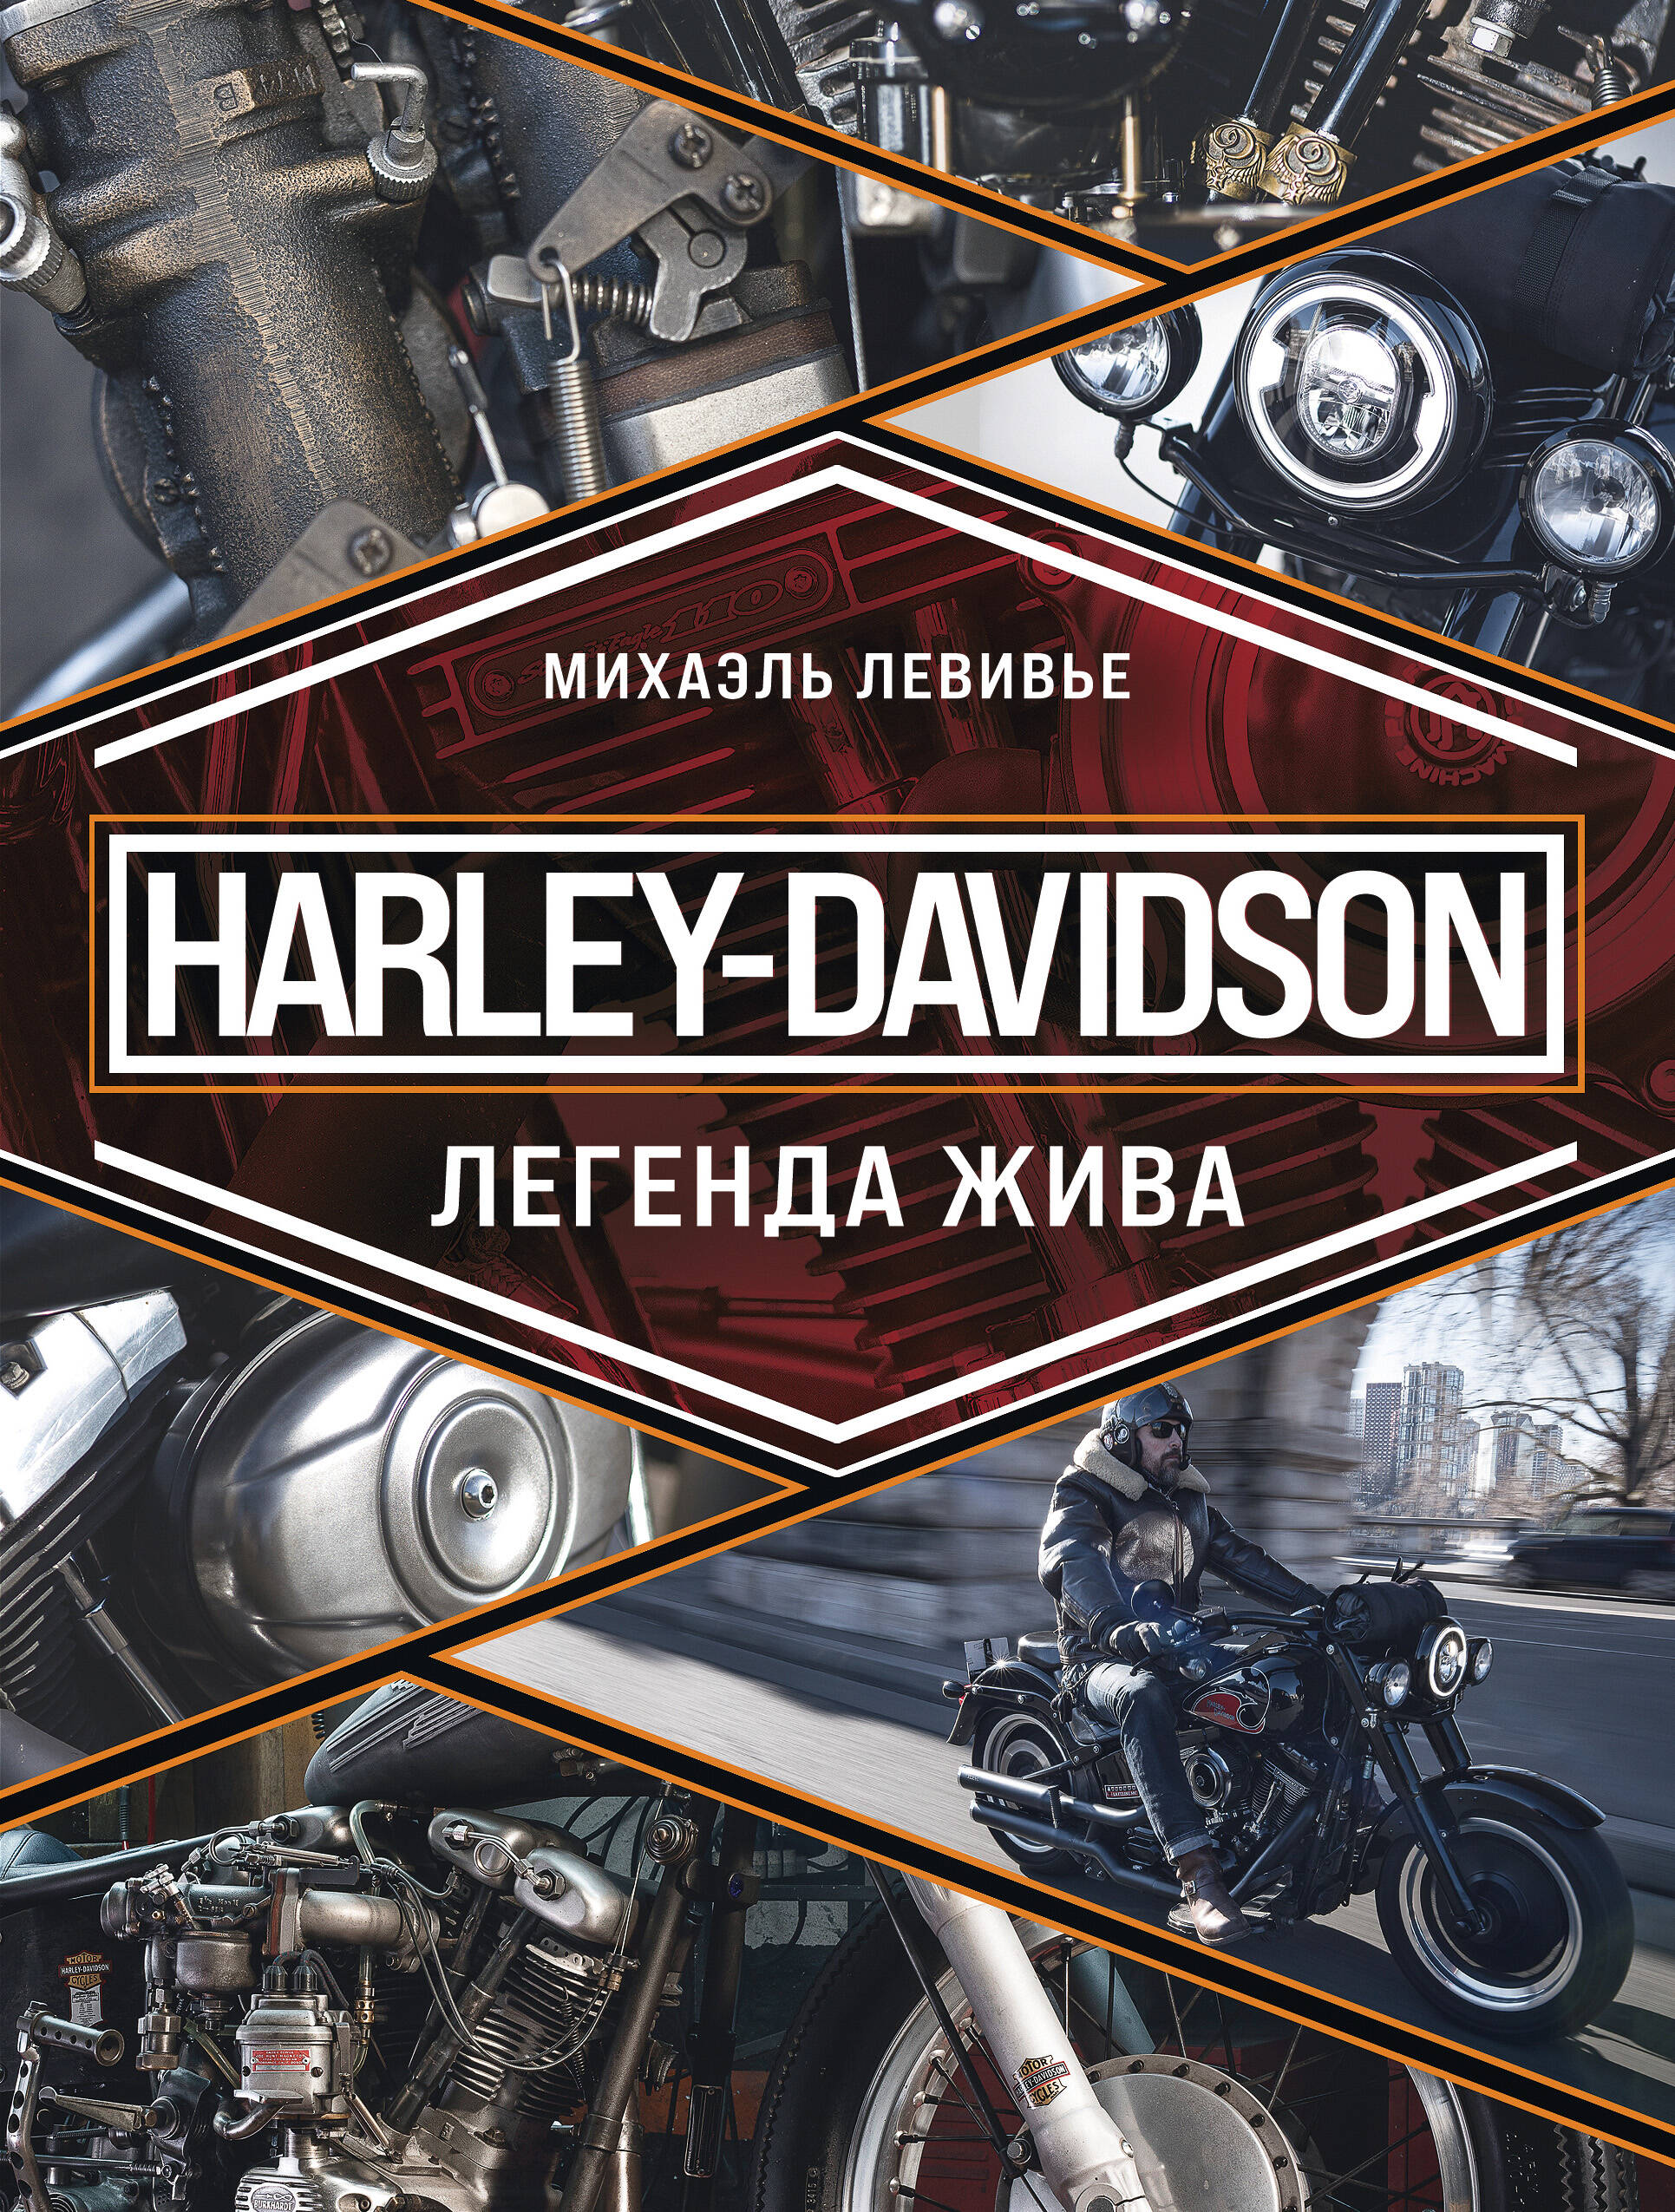 Левивье Михаэль Harley-Davidson. Легенда жива зажимы поворотных сигналов 39 мм для мотоциклов универсальные для honda cbr kawasaki suzuki yamaha harley davidson cd